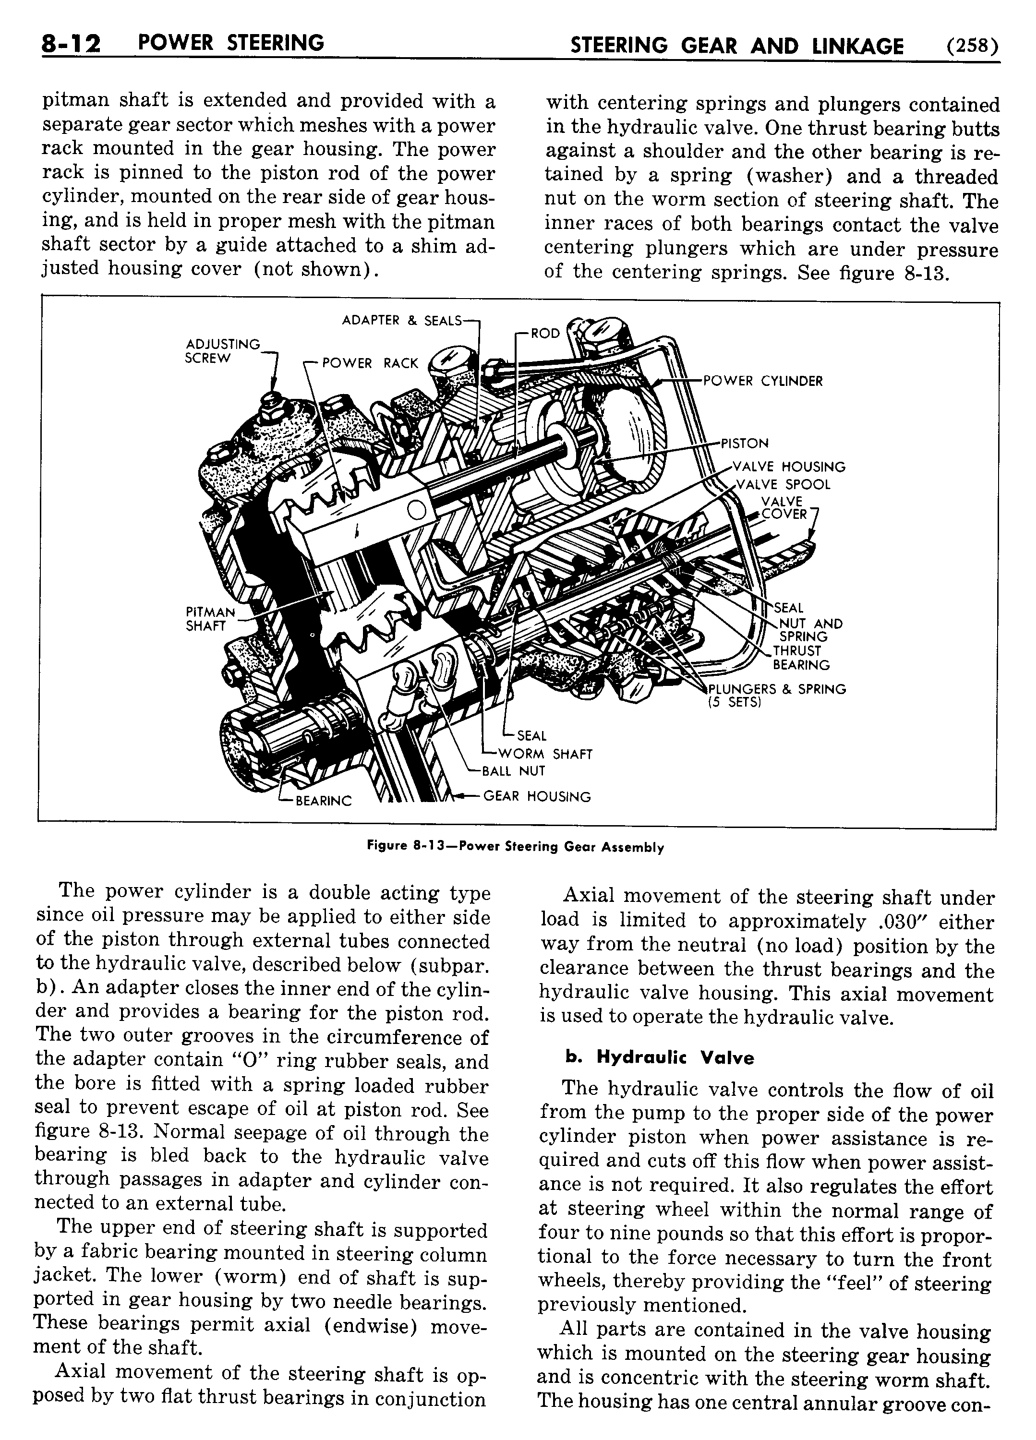 n_09 1955 Buick Shop Manual - Steering-012-012.jpg